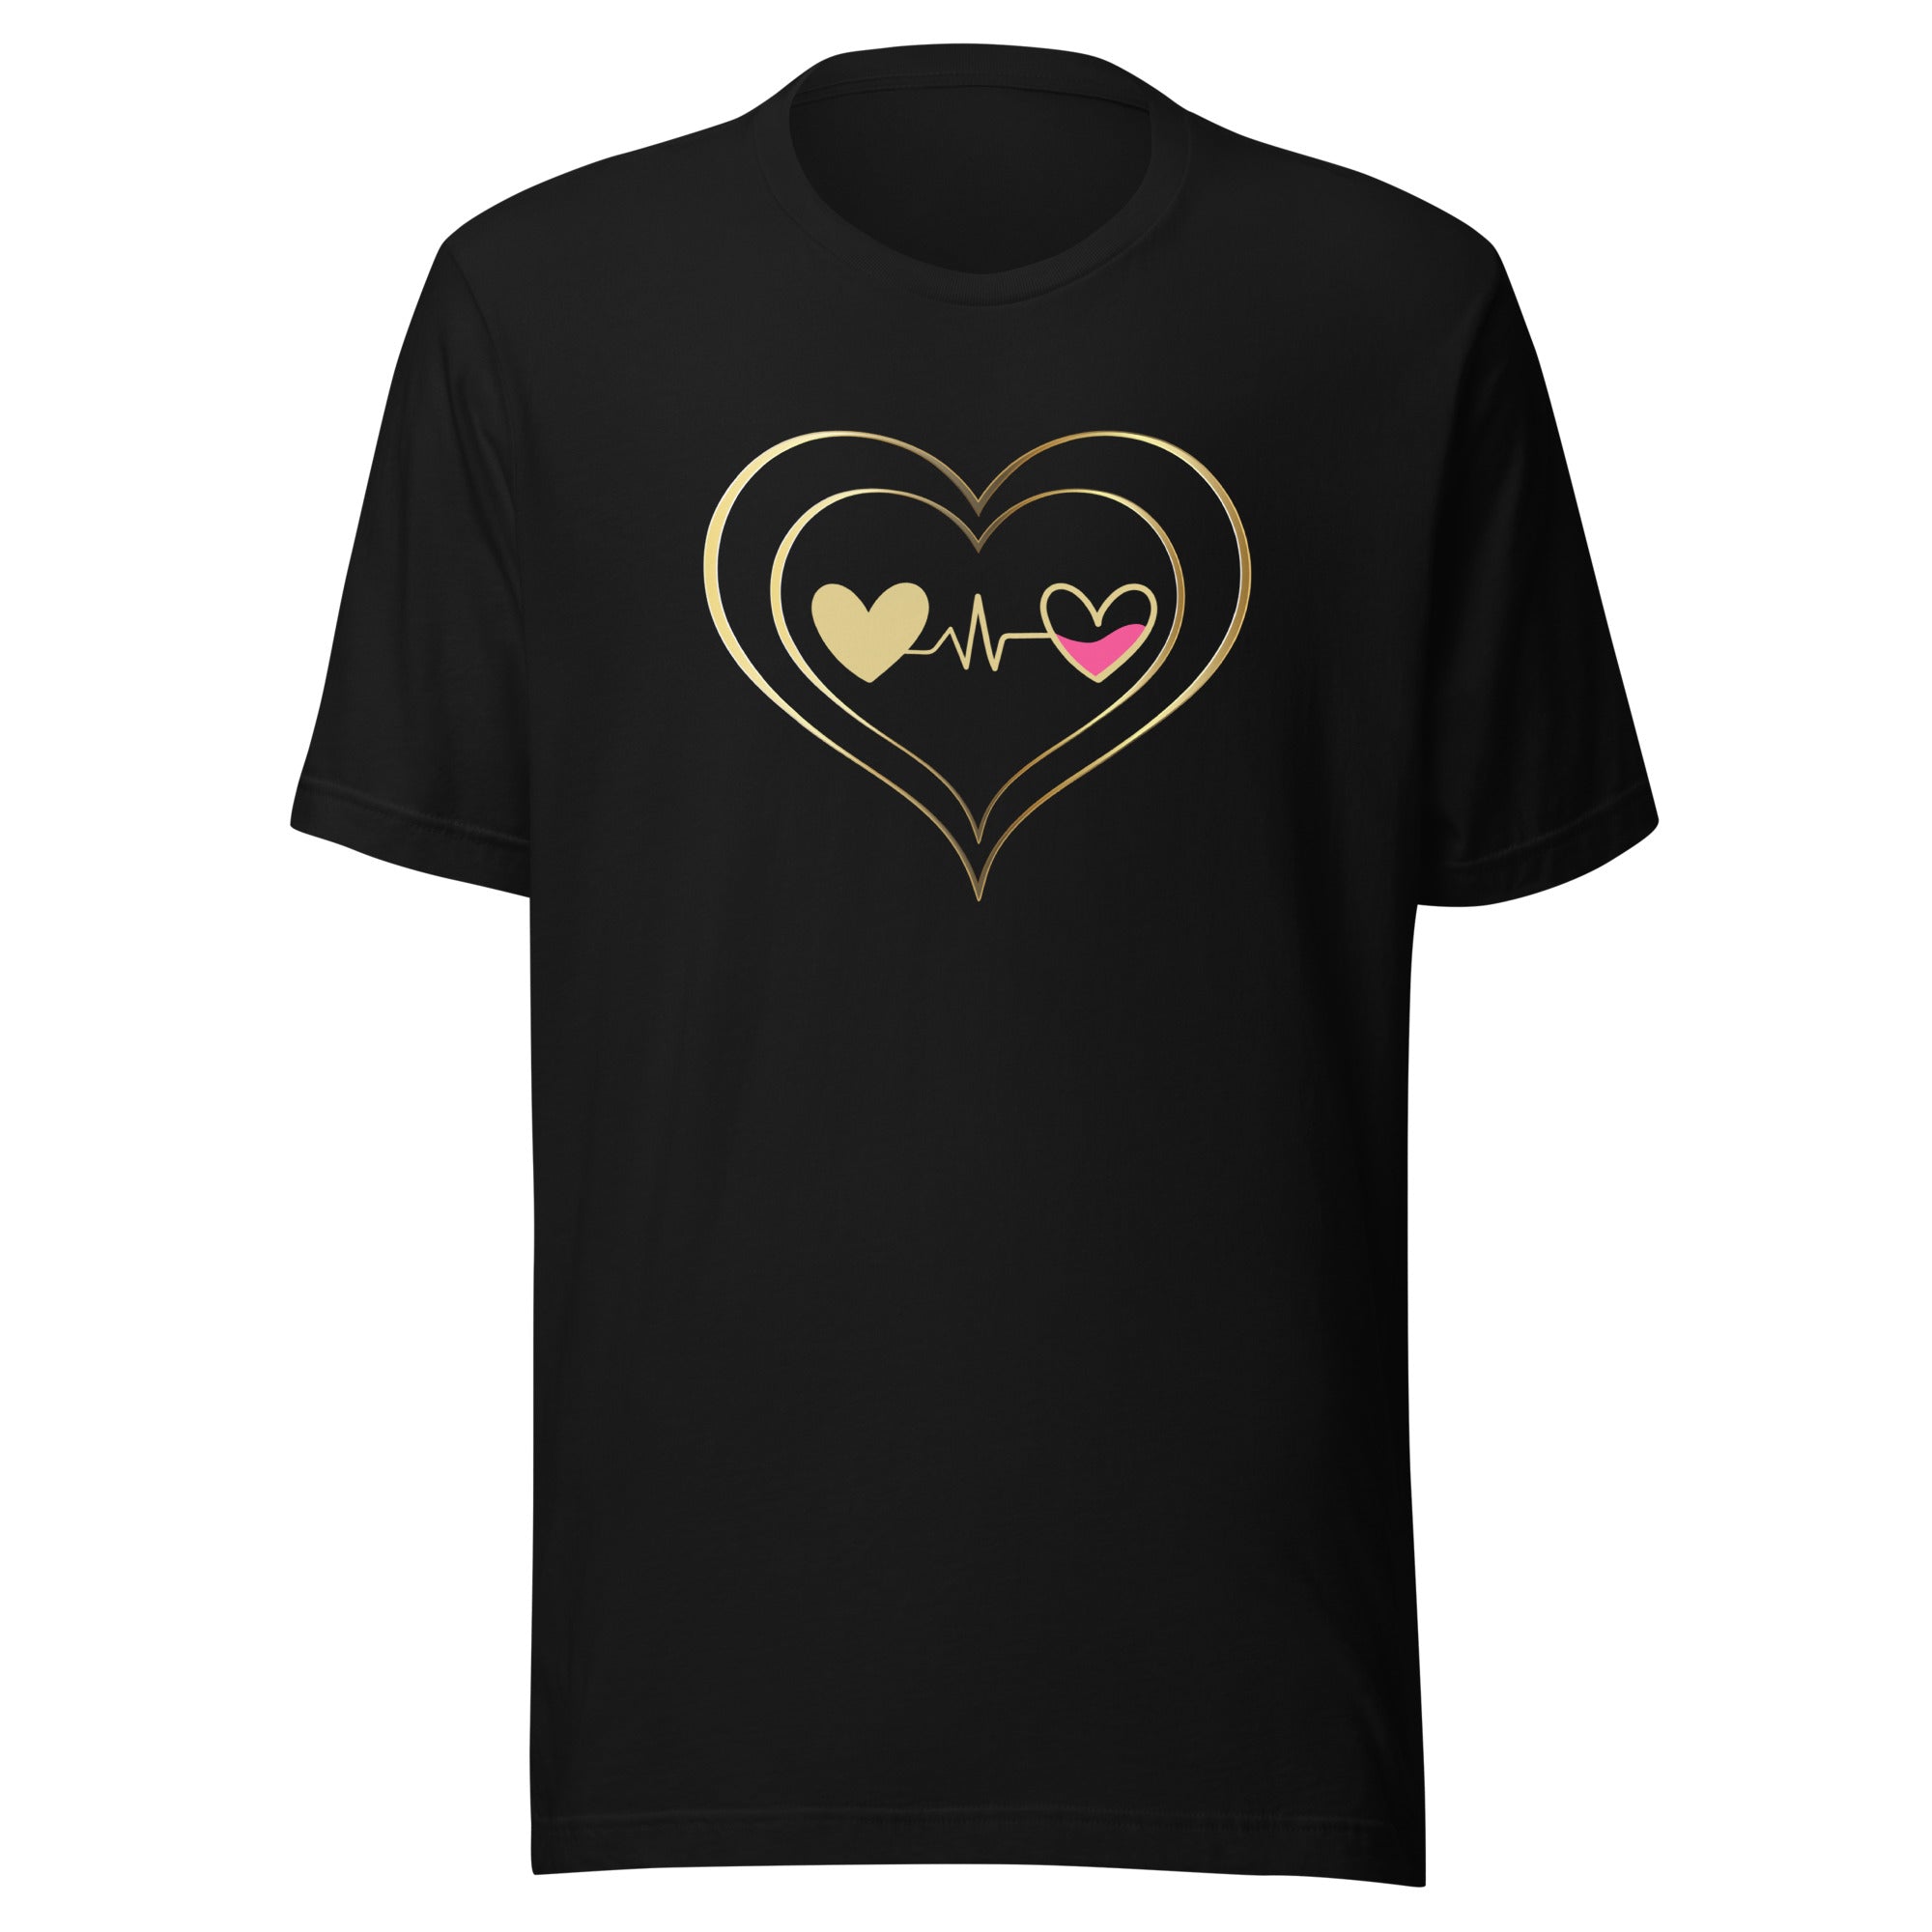 Heart That Beats Unisex t-shirt